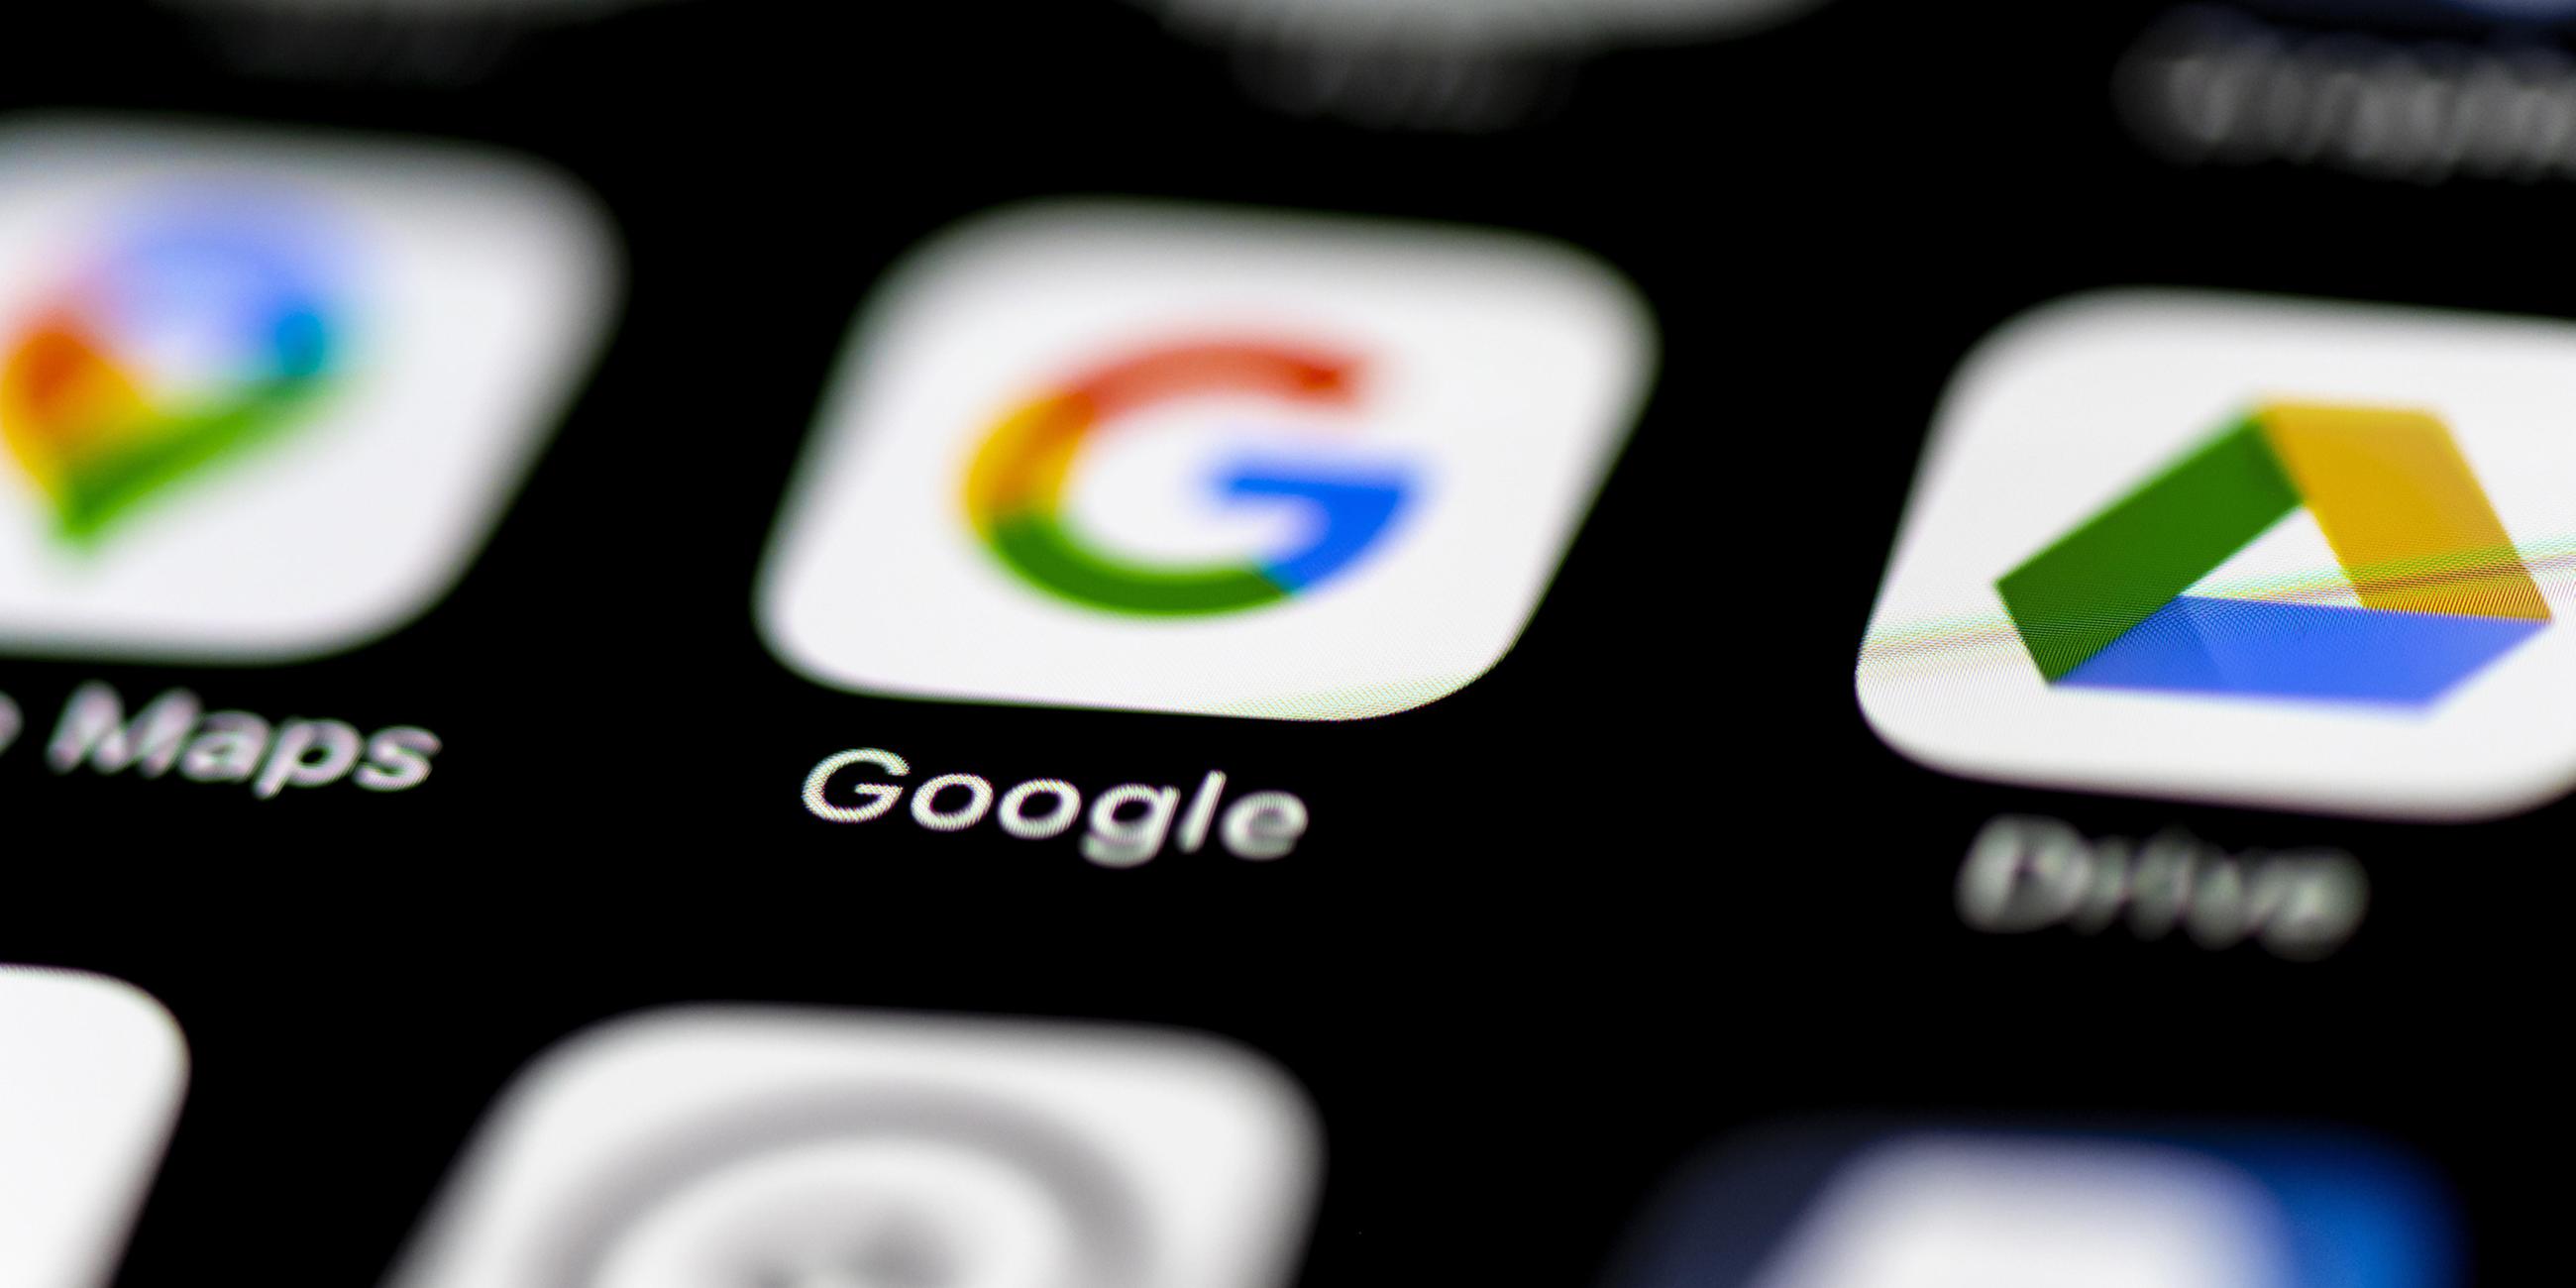 Logos der Google-Apps auf einem Smartphone